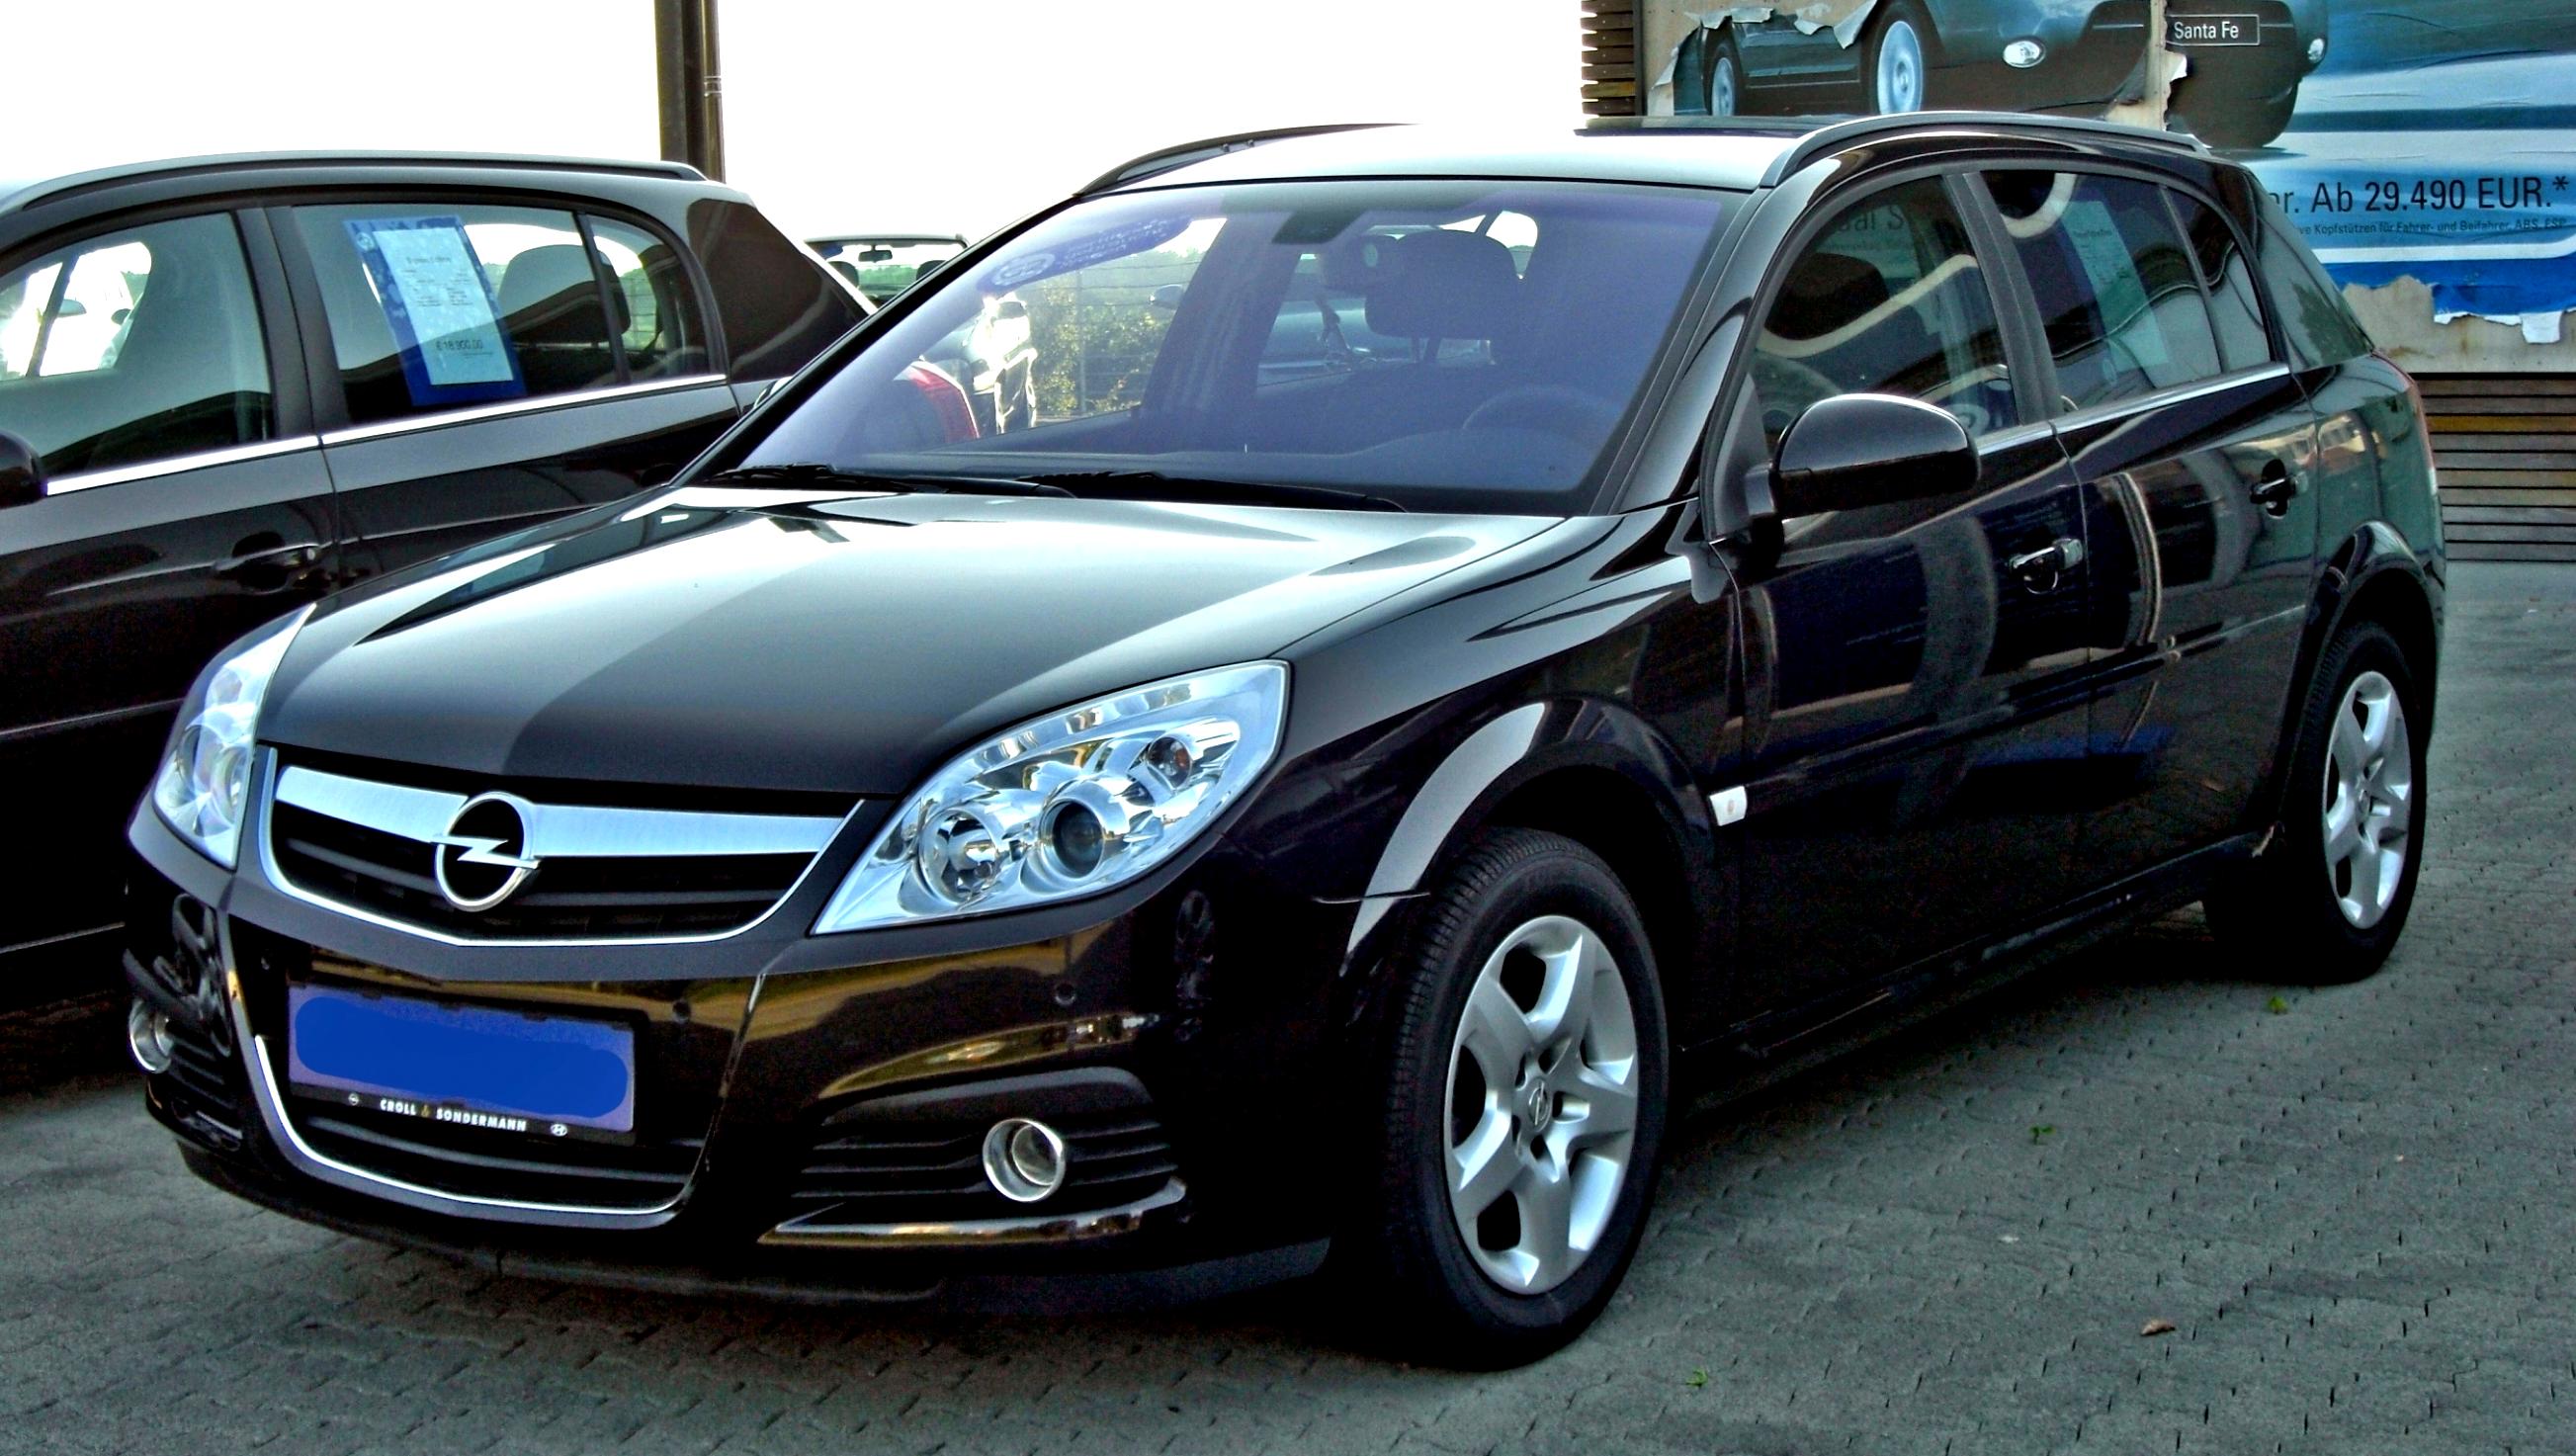 Opel дизельный